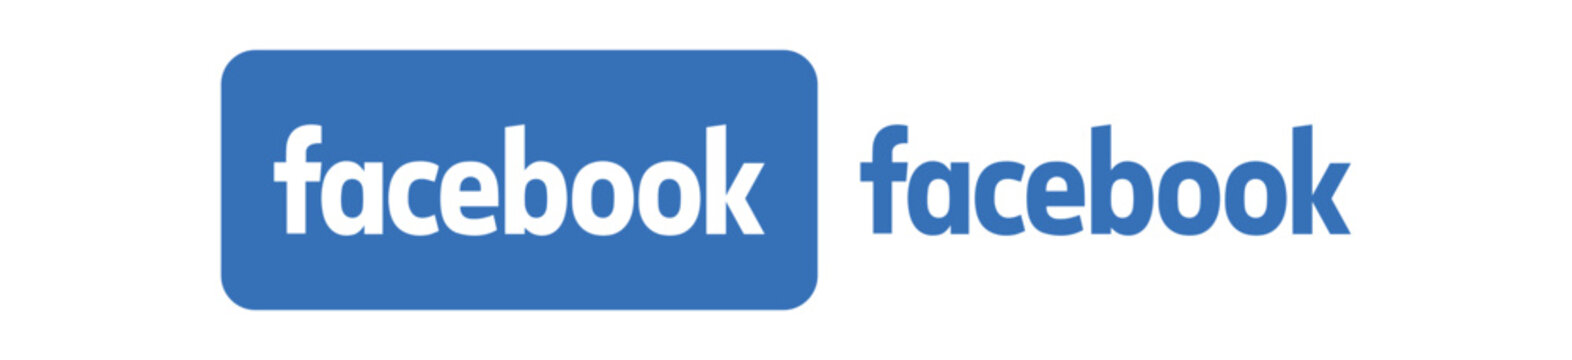 Facebook logo set on transparent background. EPS and PNG image.